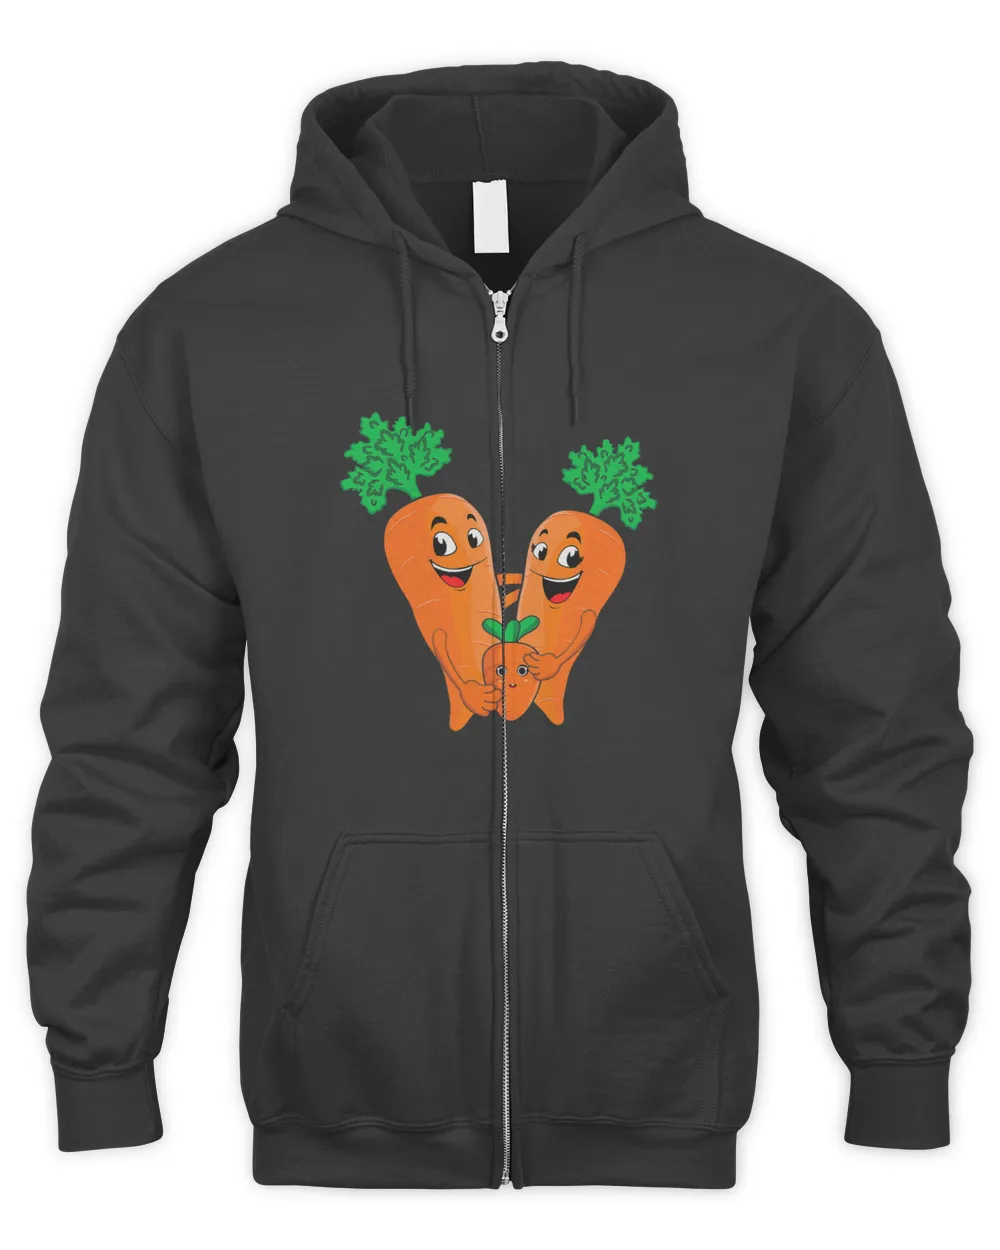 Carrot Lover Vegetable Vegetarian Vegan Green Diet